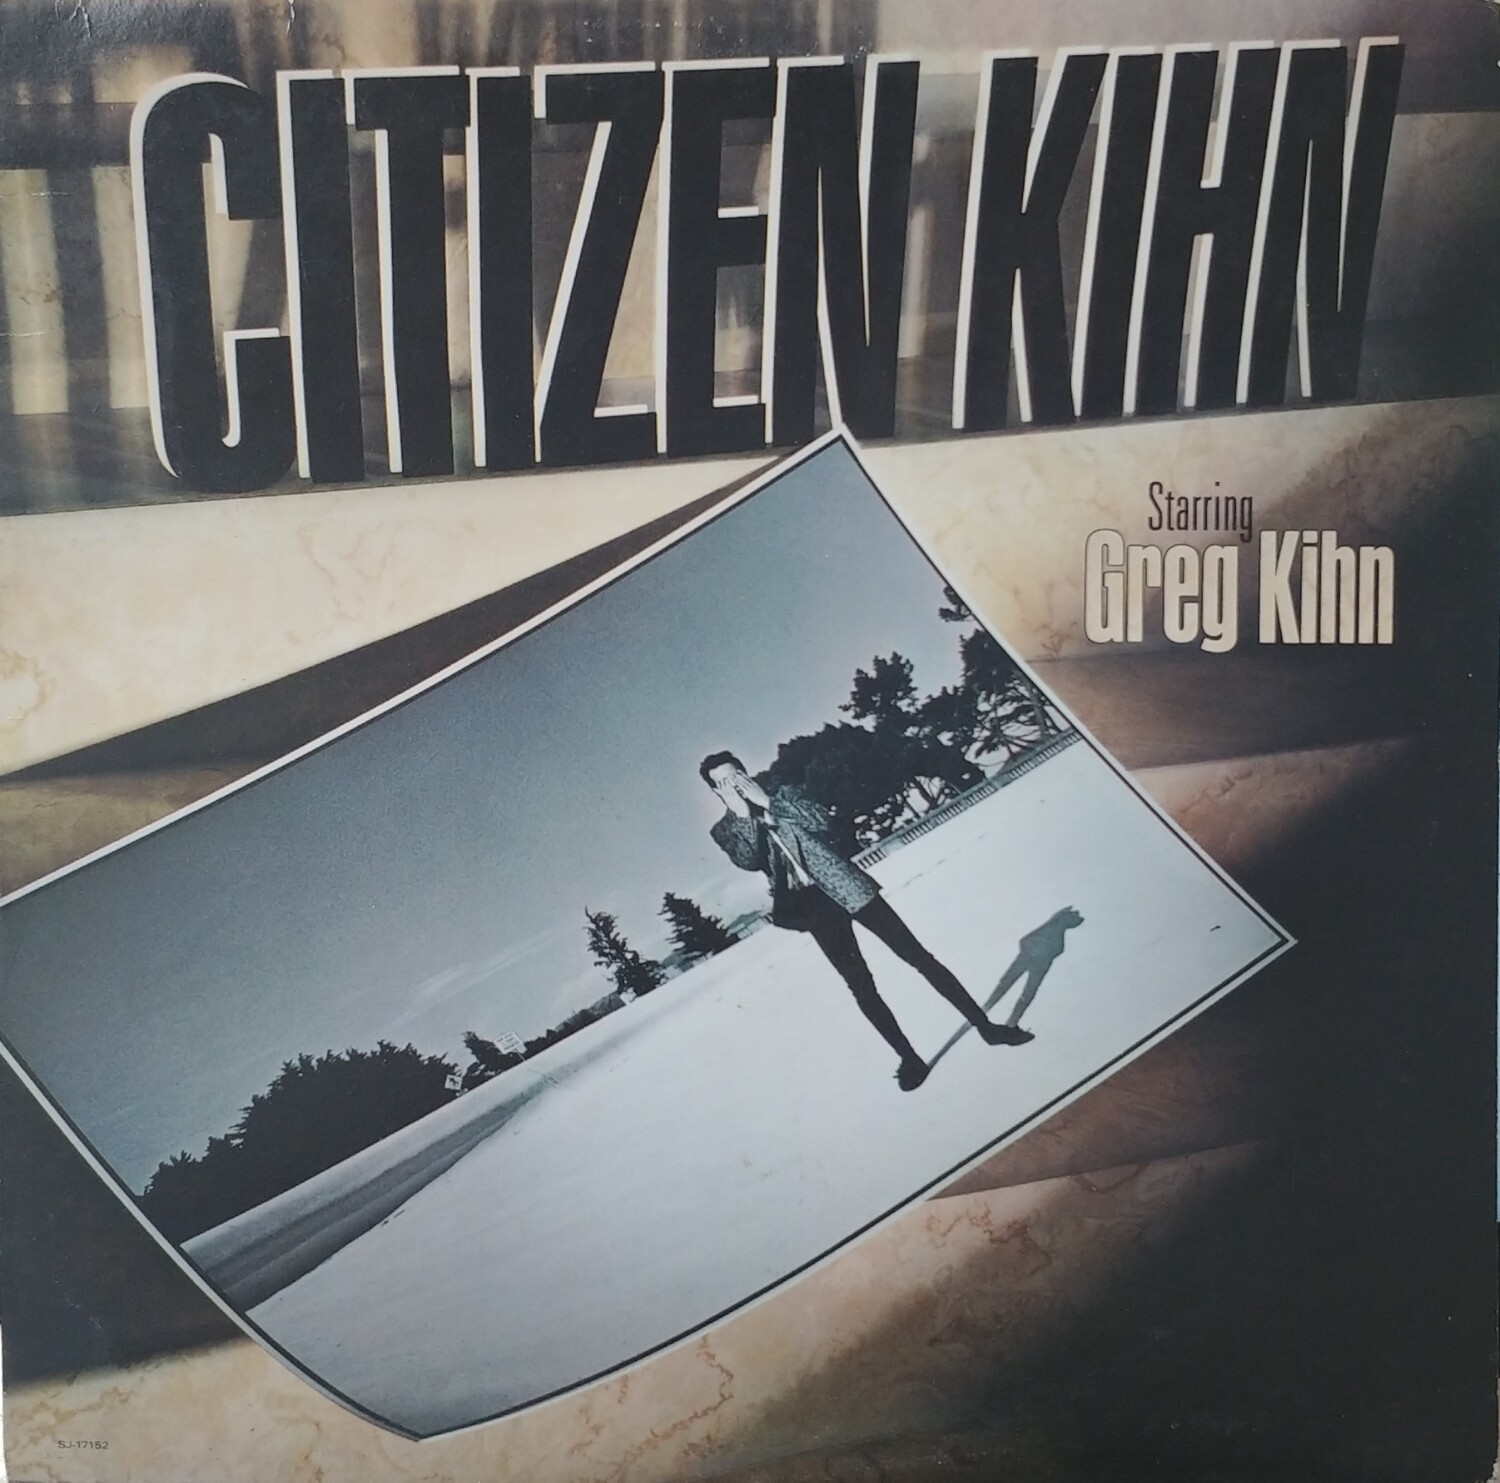 Greg Kihn - Citizen Kihn